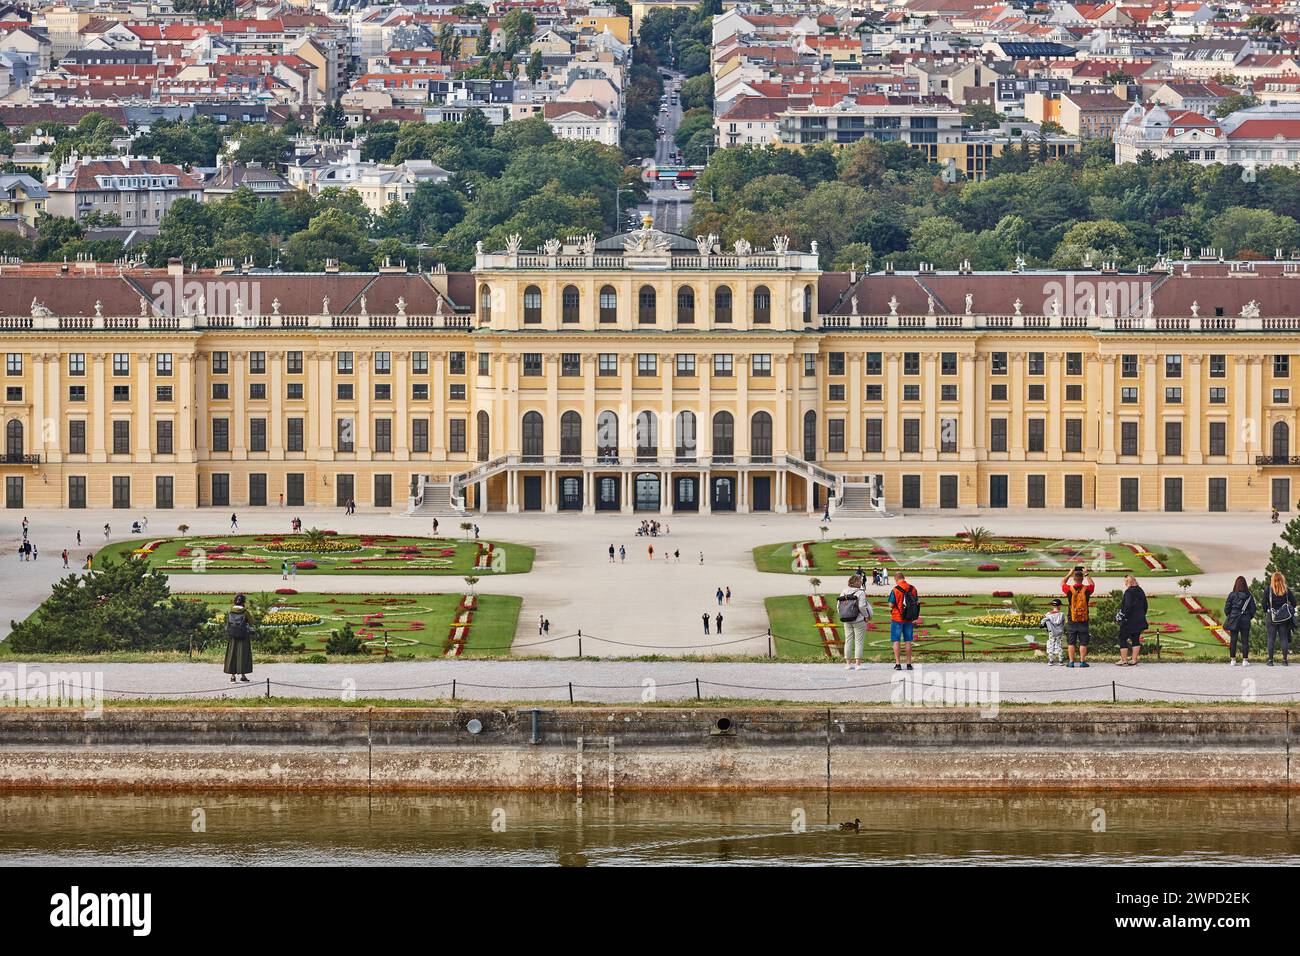 Schloss Schönbrunn und Gärten. Architektonisches Wahrzeichen in Wien. Österreich Stockfoto